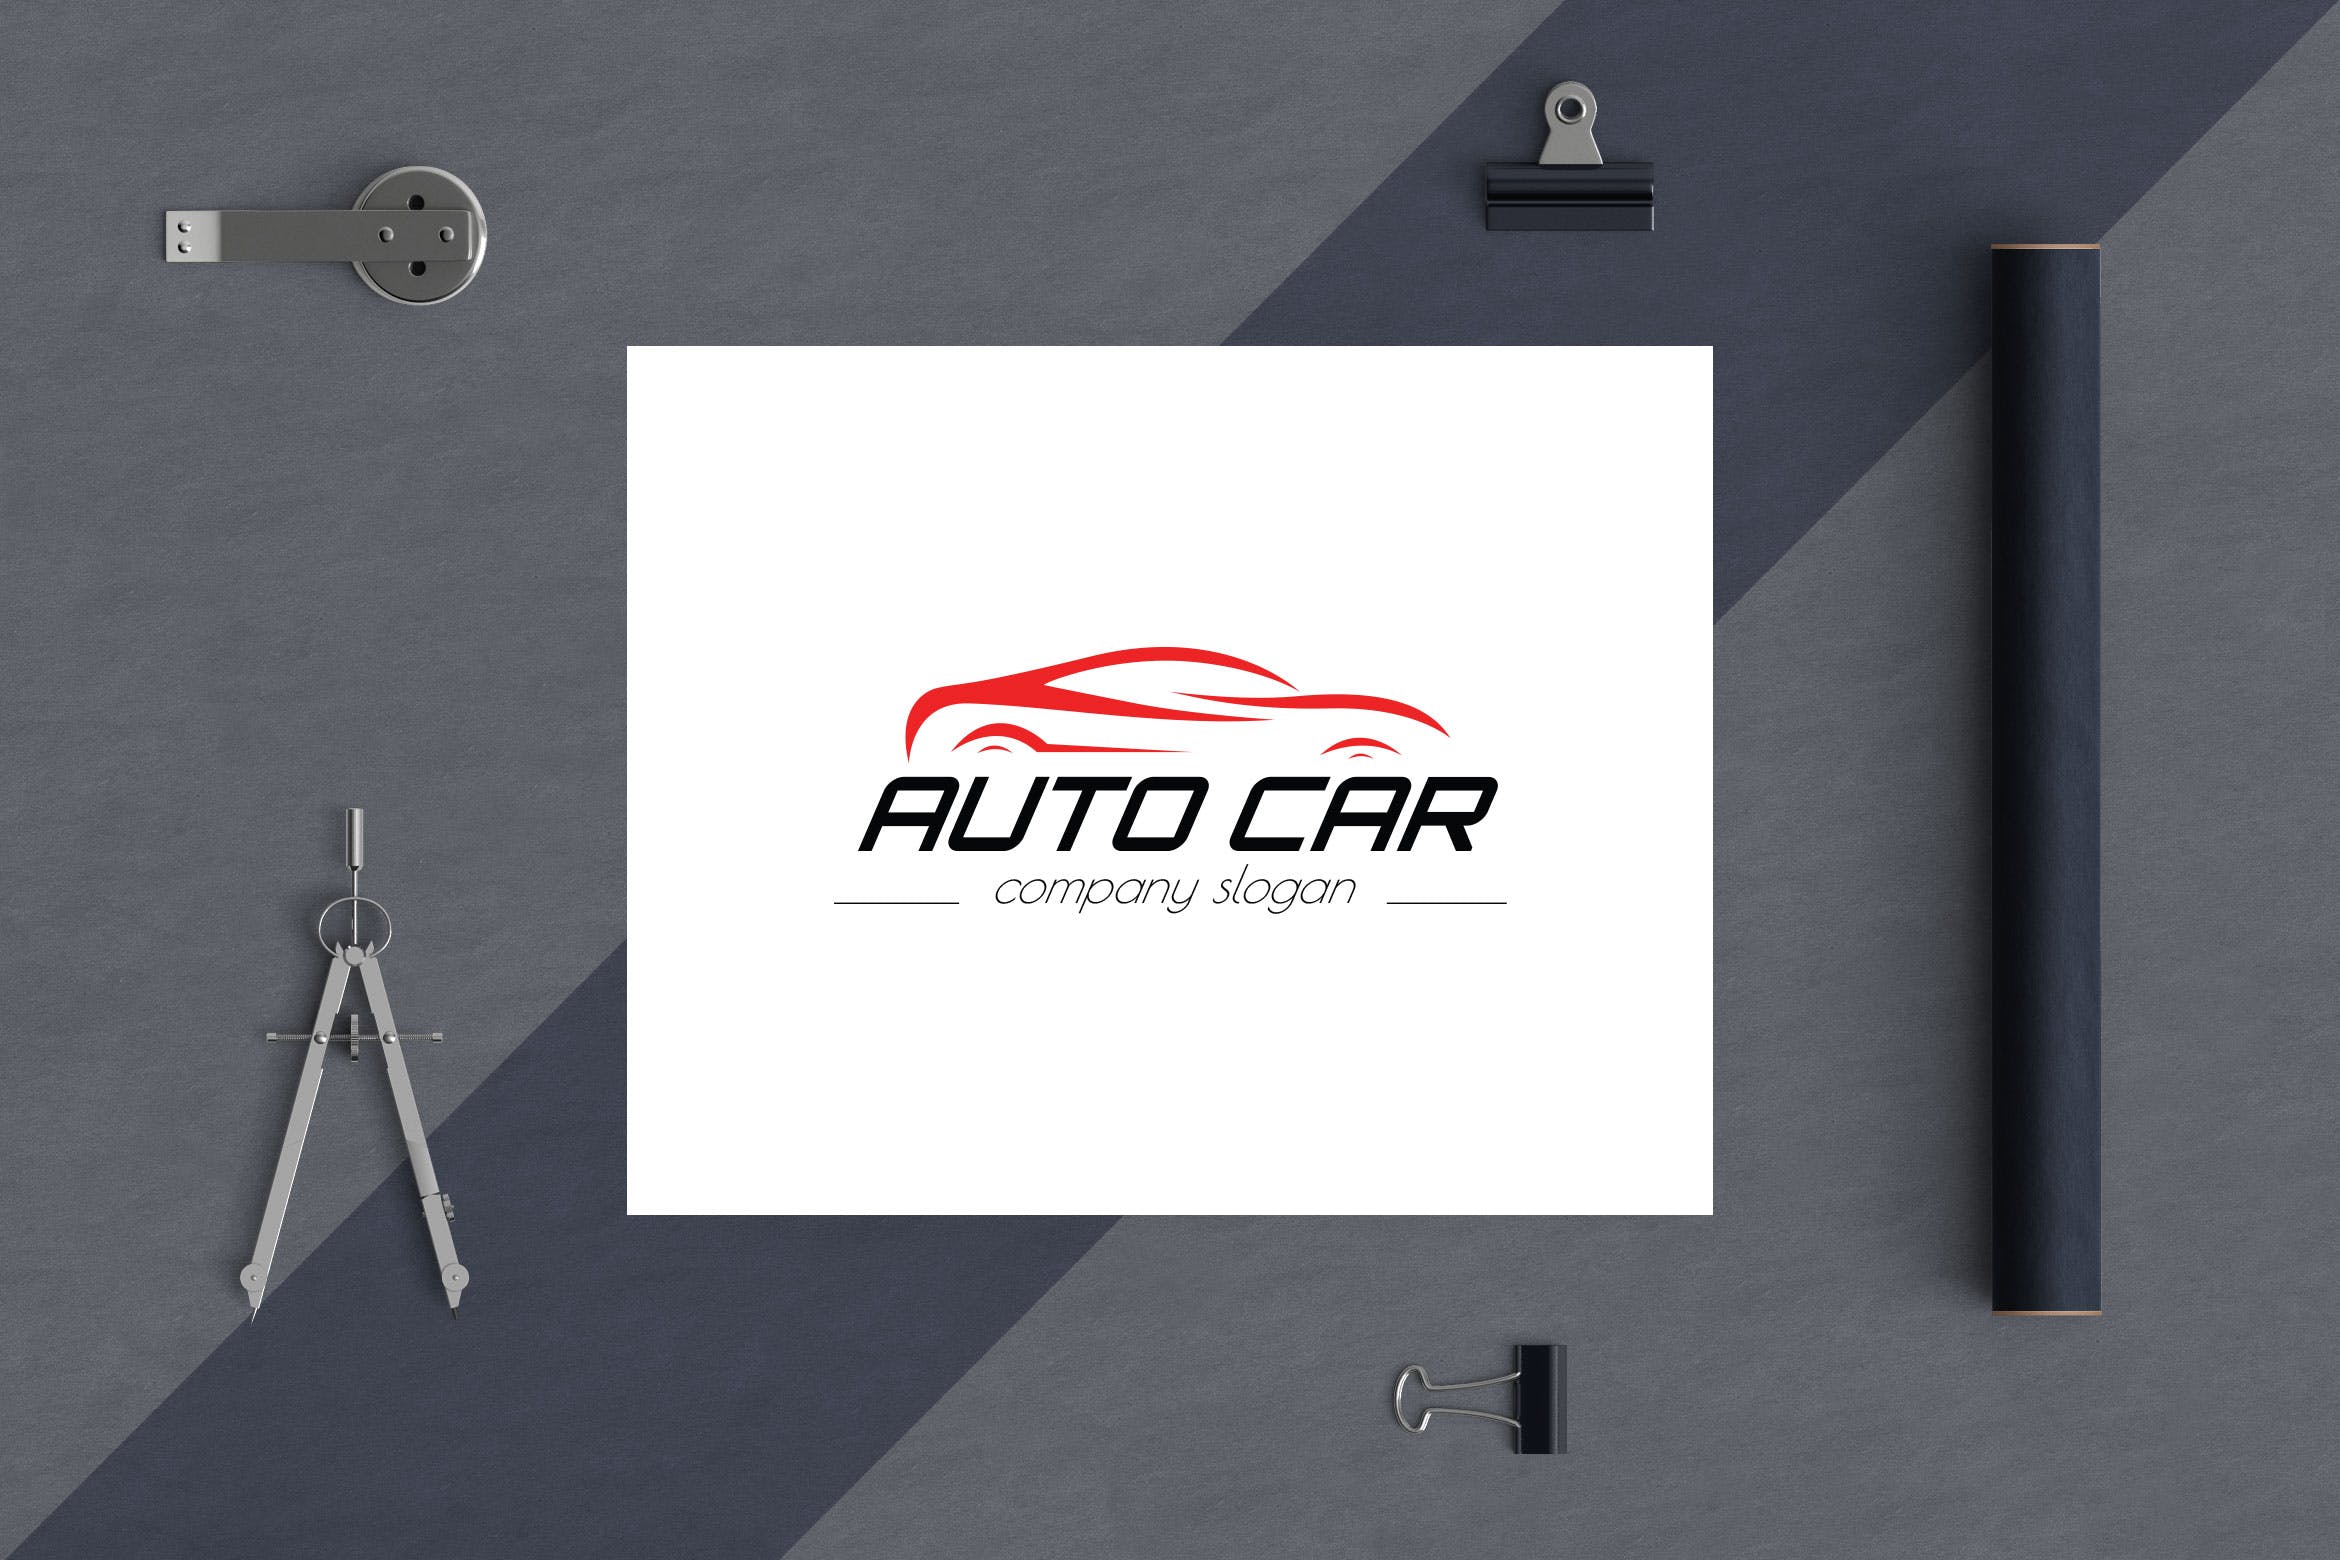 汽车相关企业品牌Logo设计16图库精选模板 Auto Car Business Logo Template插图